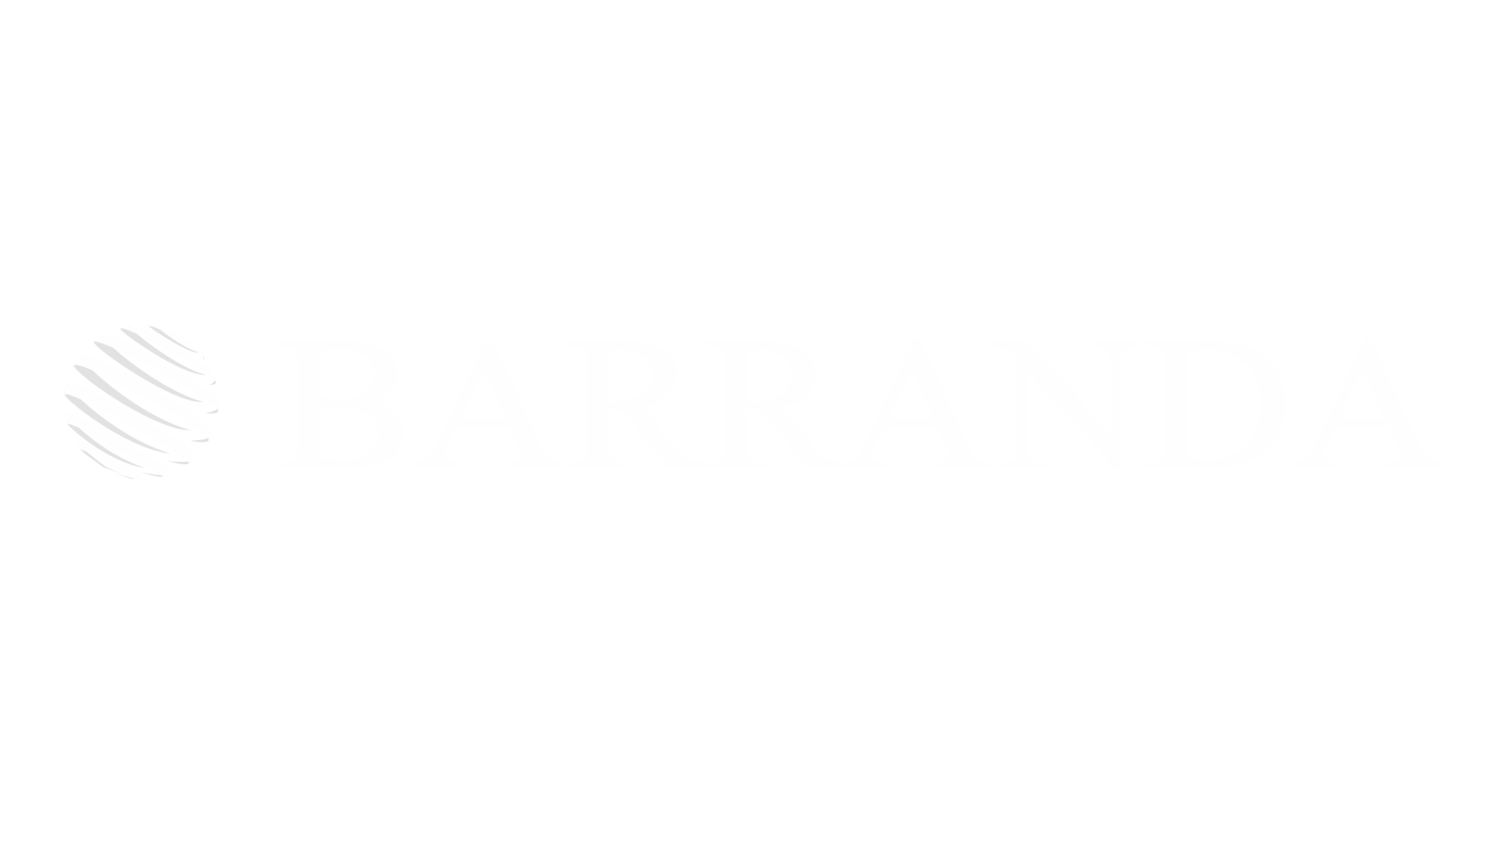 Barranda